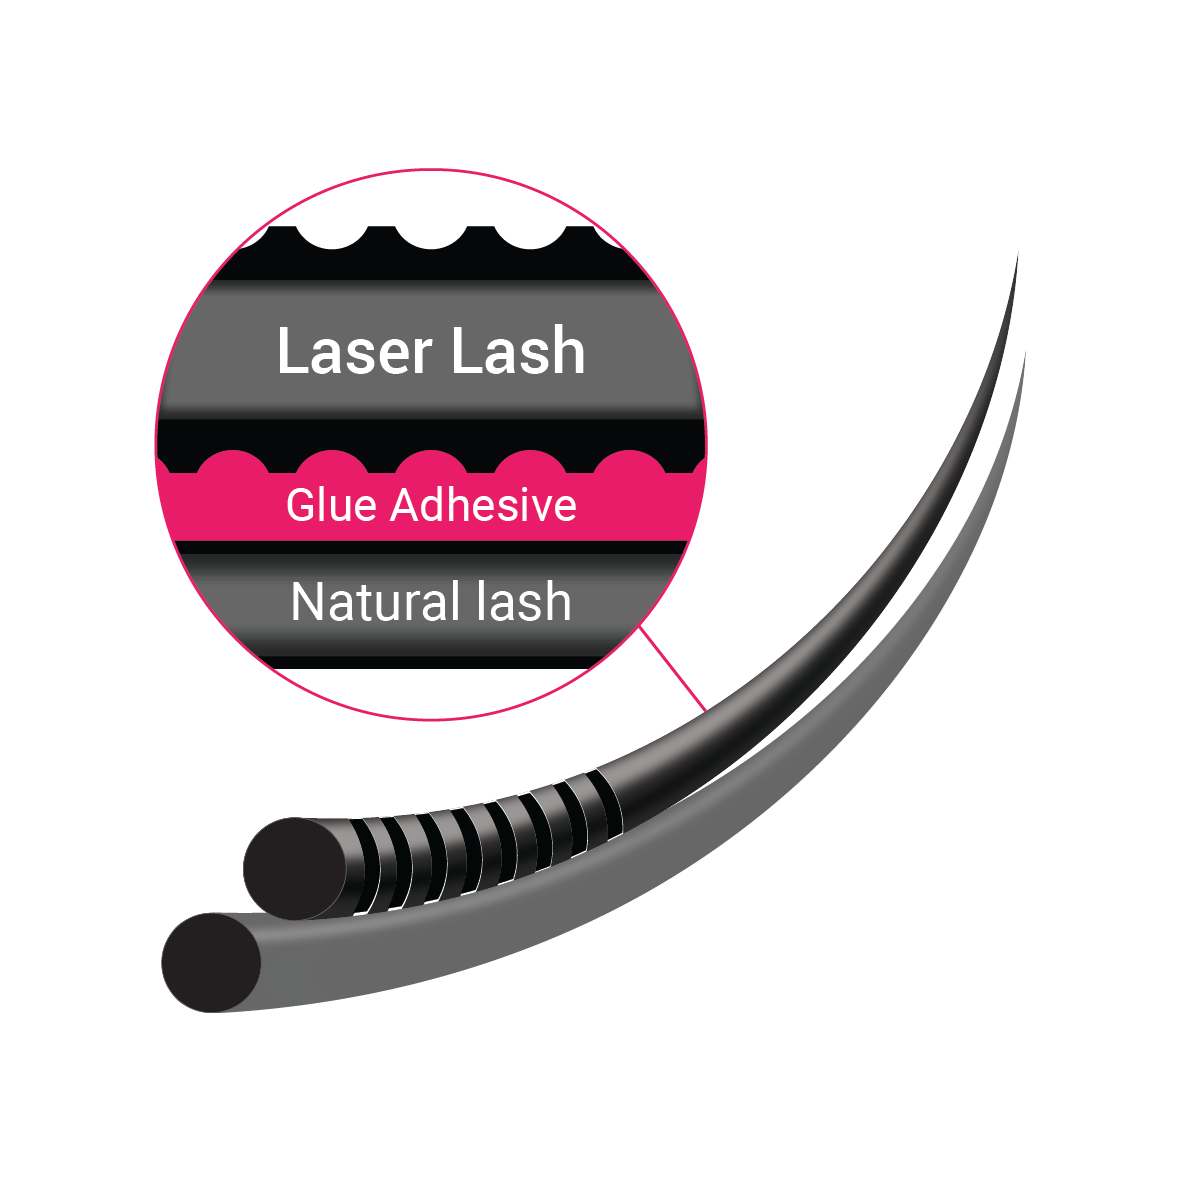 laser lash attachment - 3D view